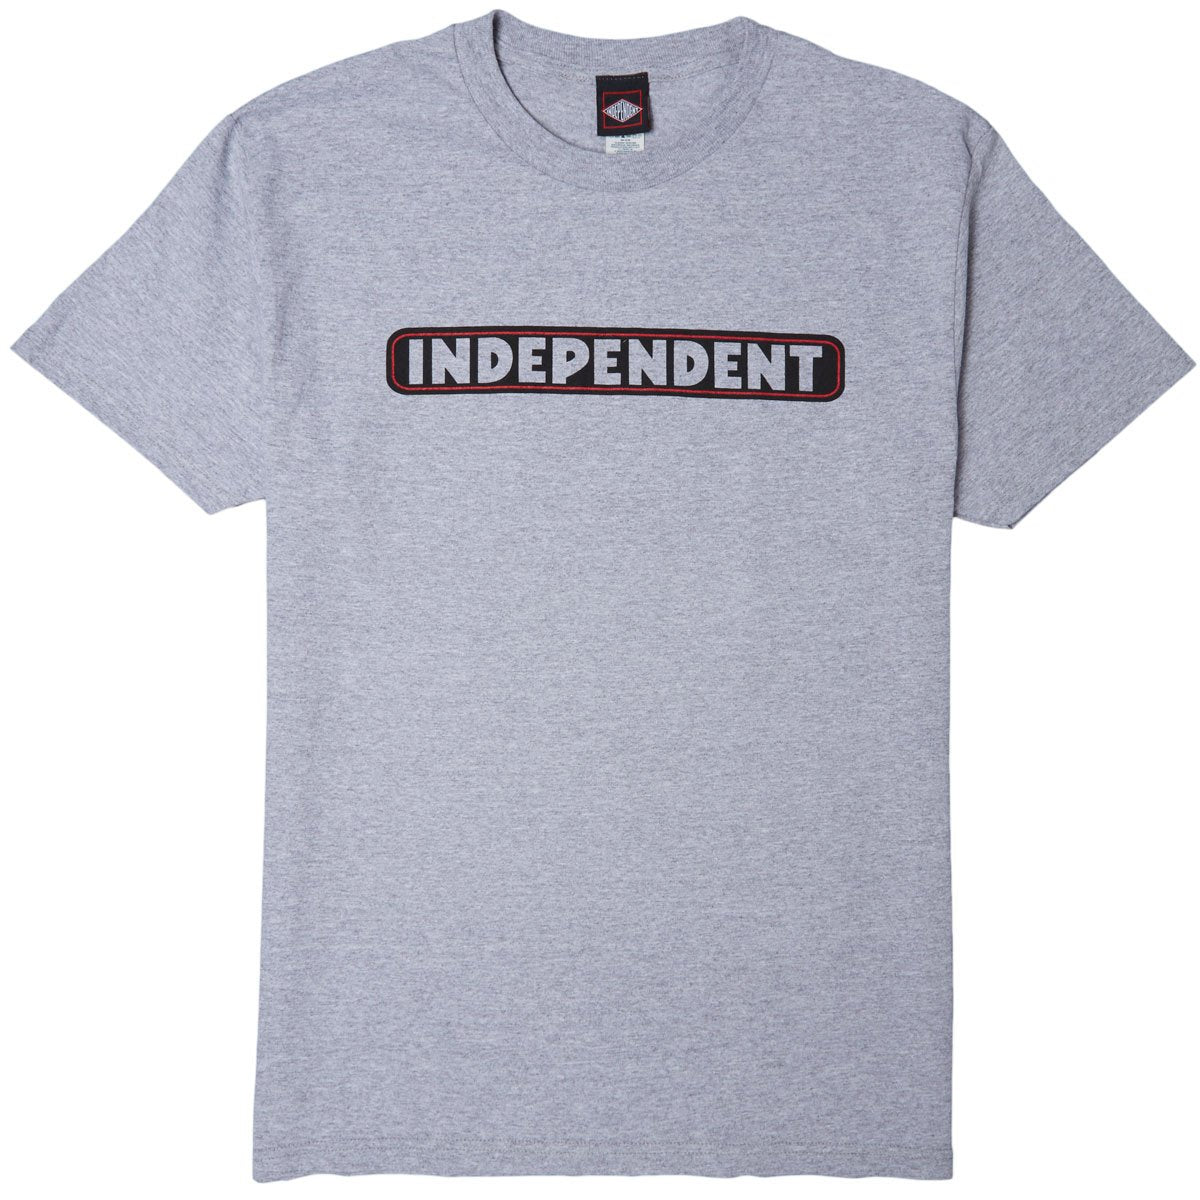 Independent Bar Logo T-Shirt - Heather Grey image 1